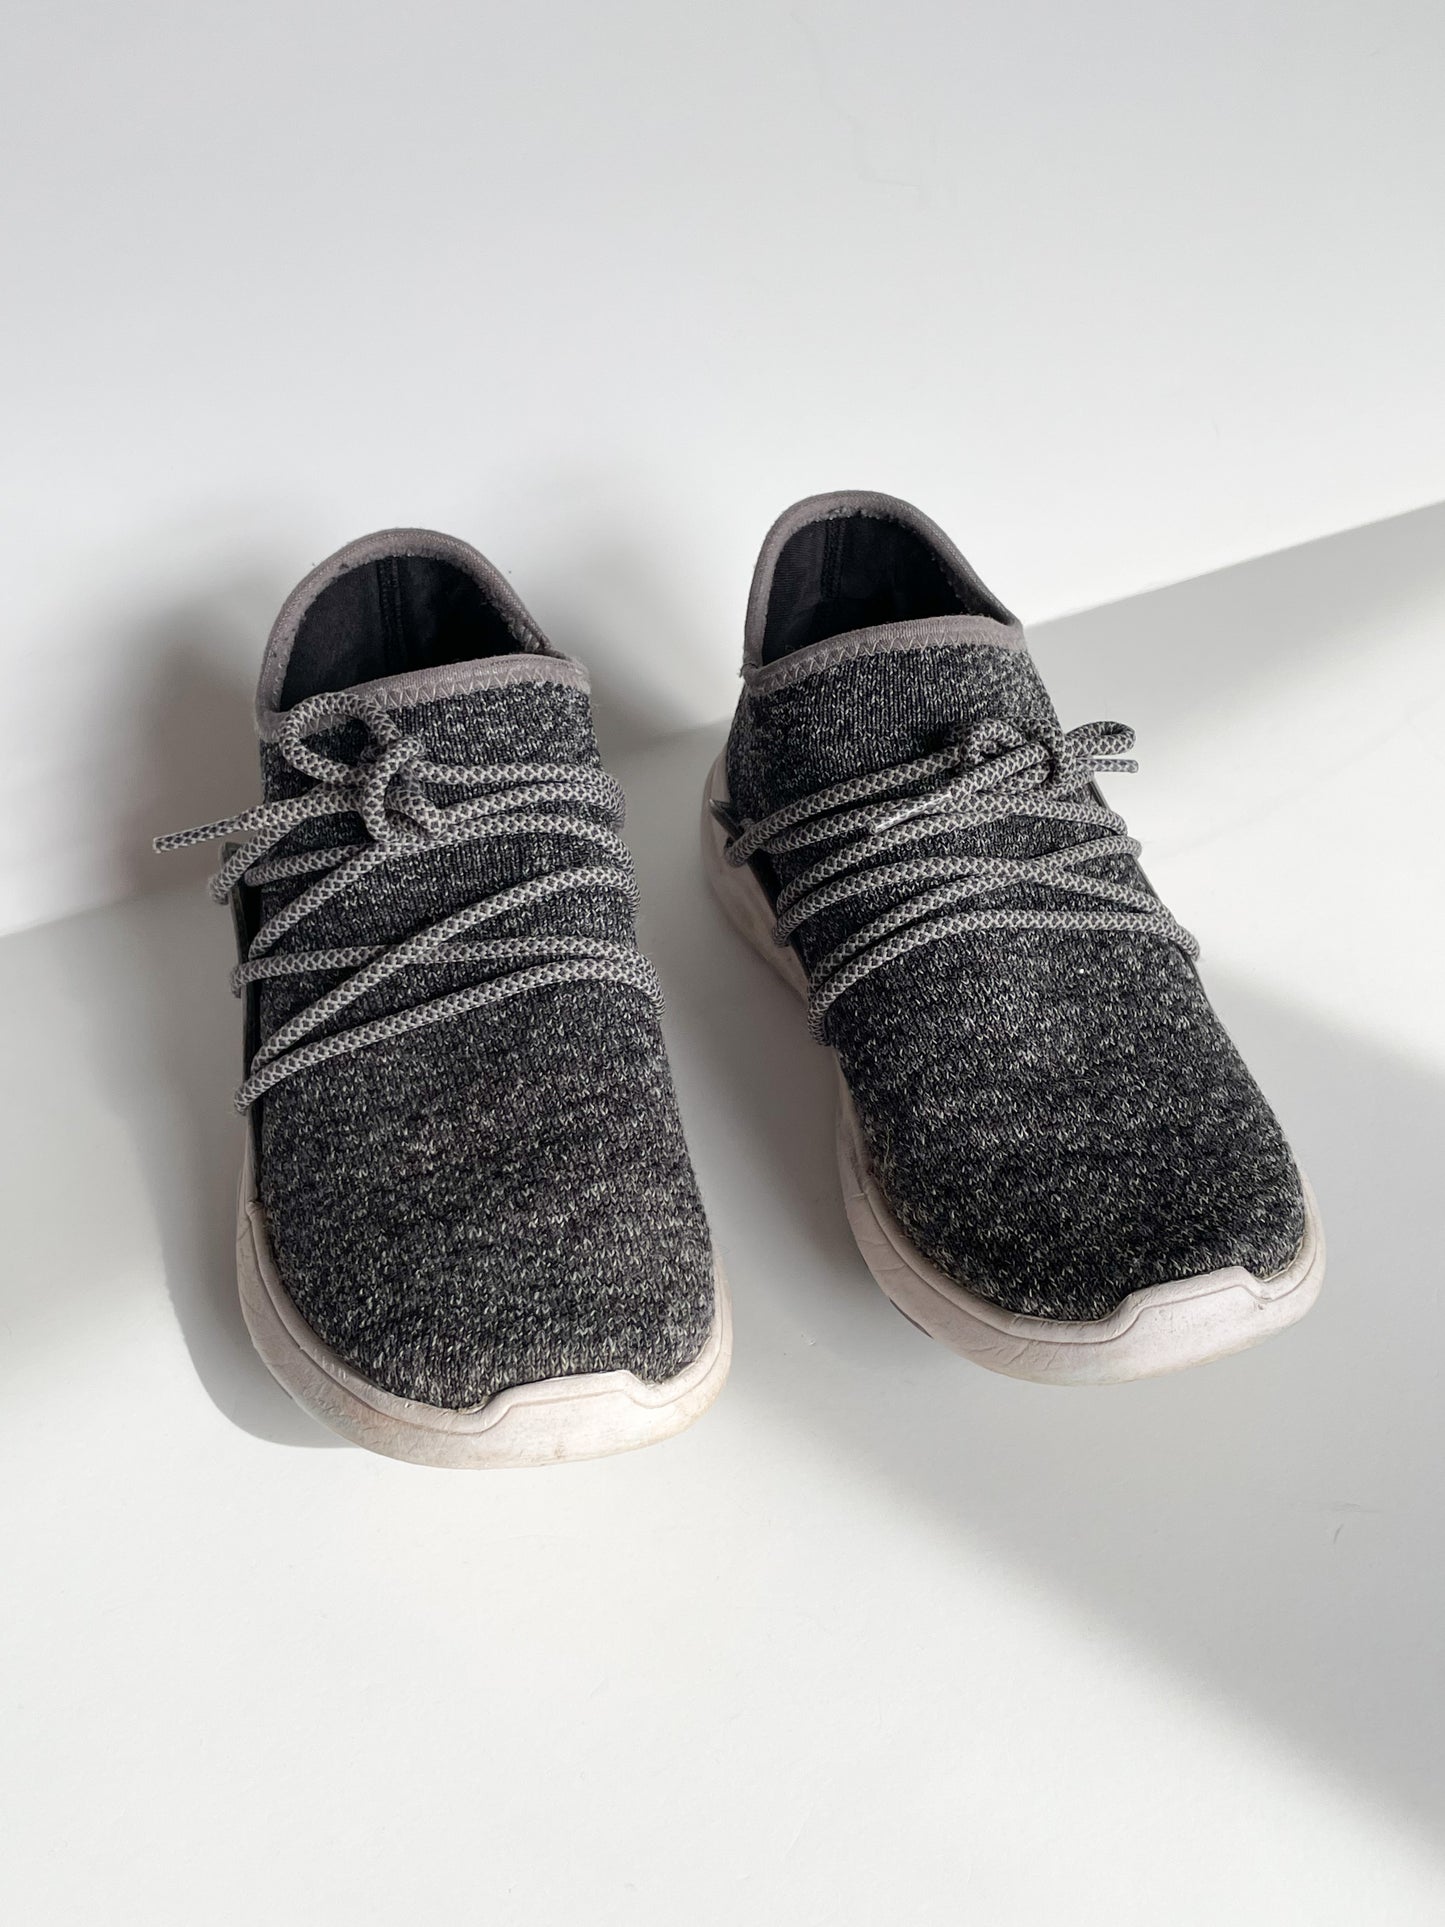 VESSI Grey Waterproof Lash Knit Sneakers - Size 7W